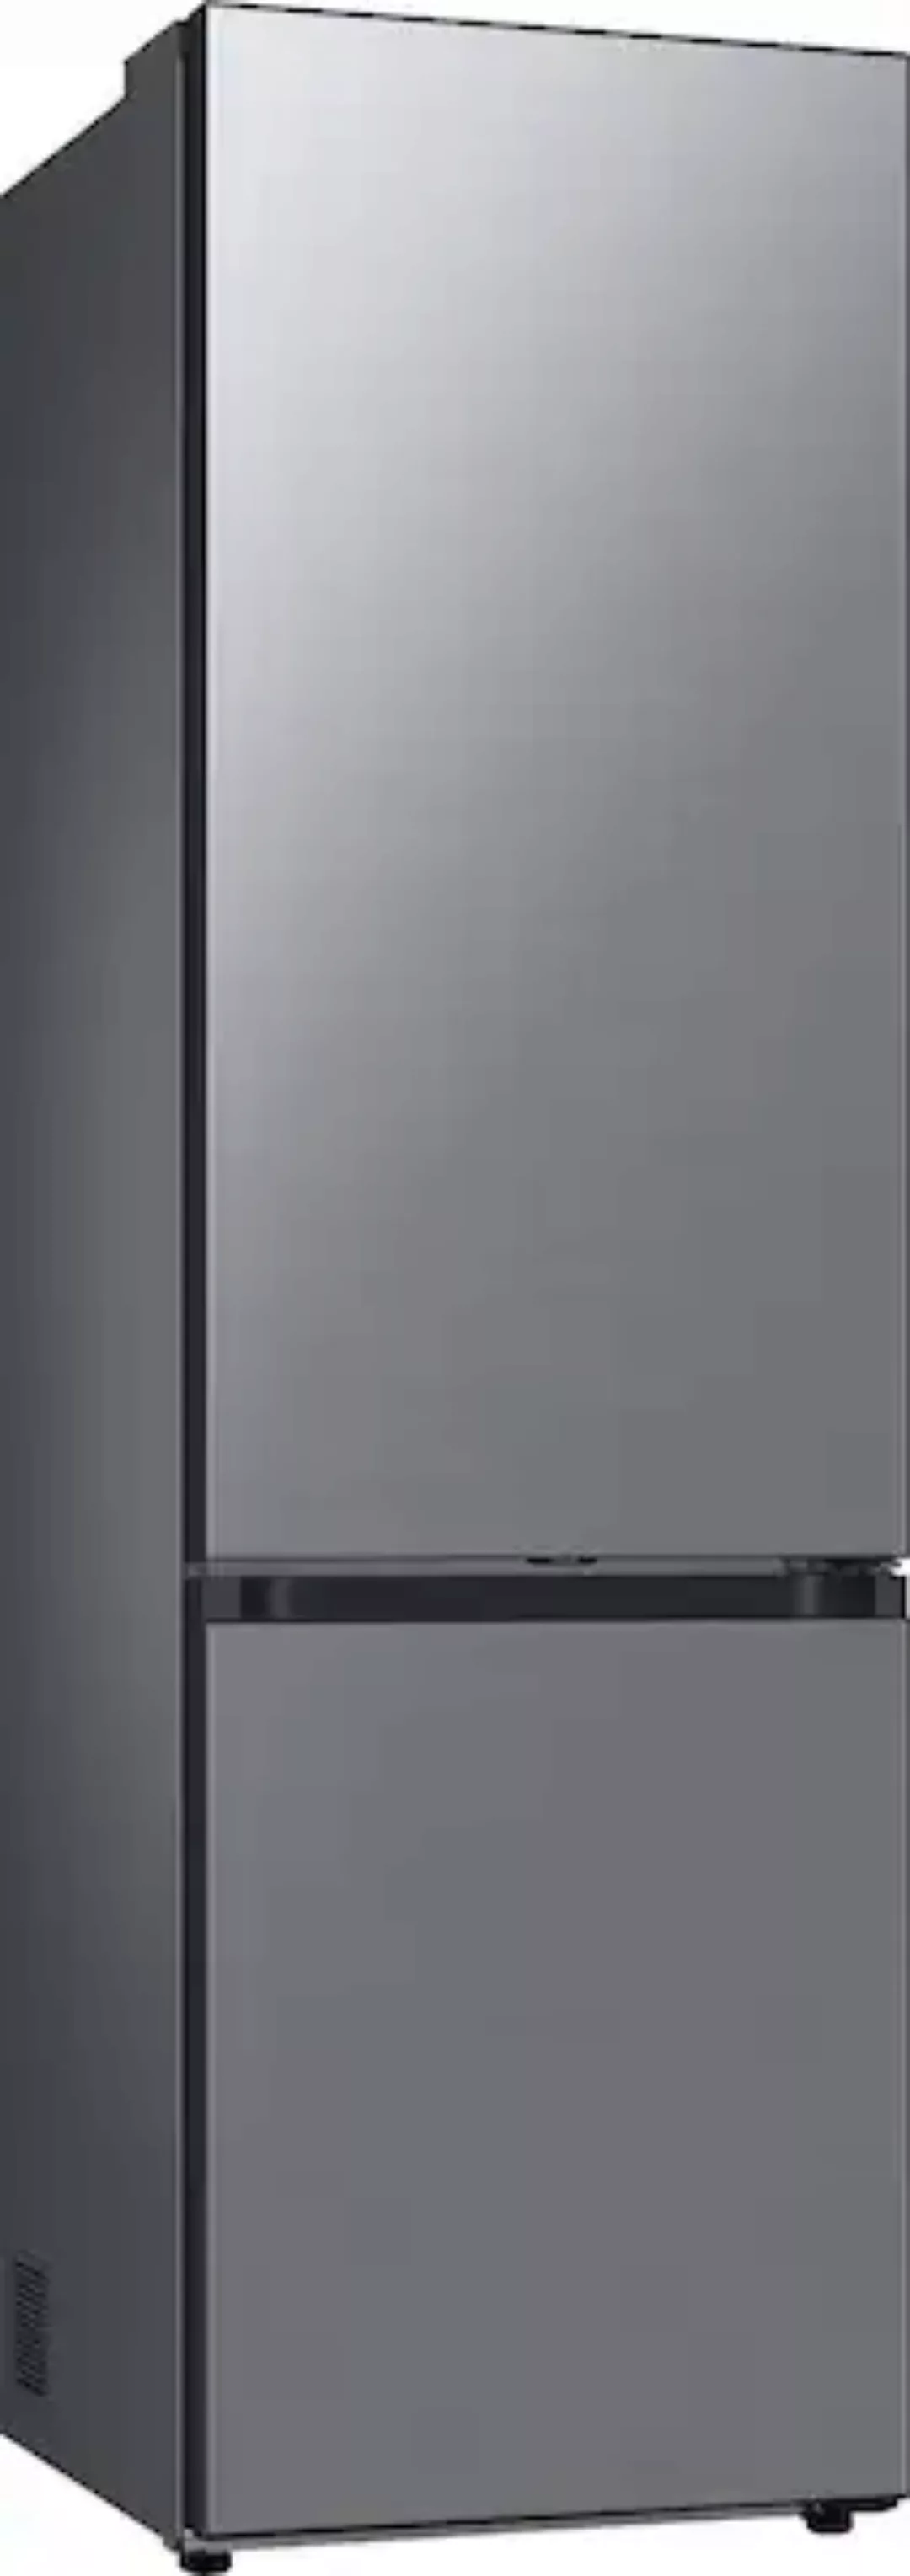 Samsung Kühl-/Gefrierkombination »RL38A7CGTS9«, RL38A7CGTS9, 203 cm hoch, 5 günstig online kaufen